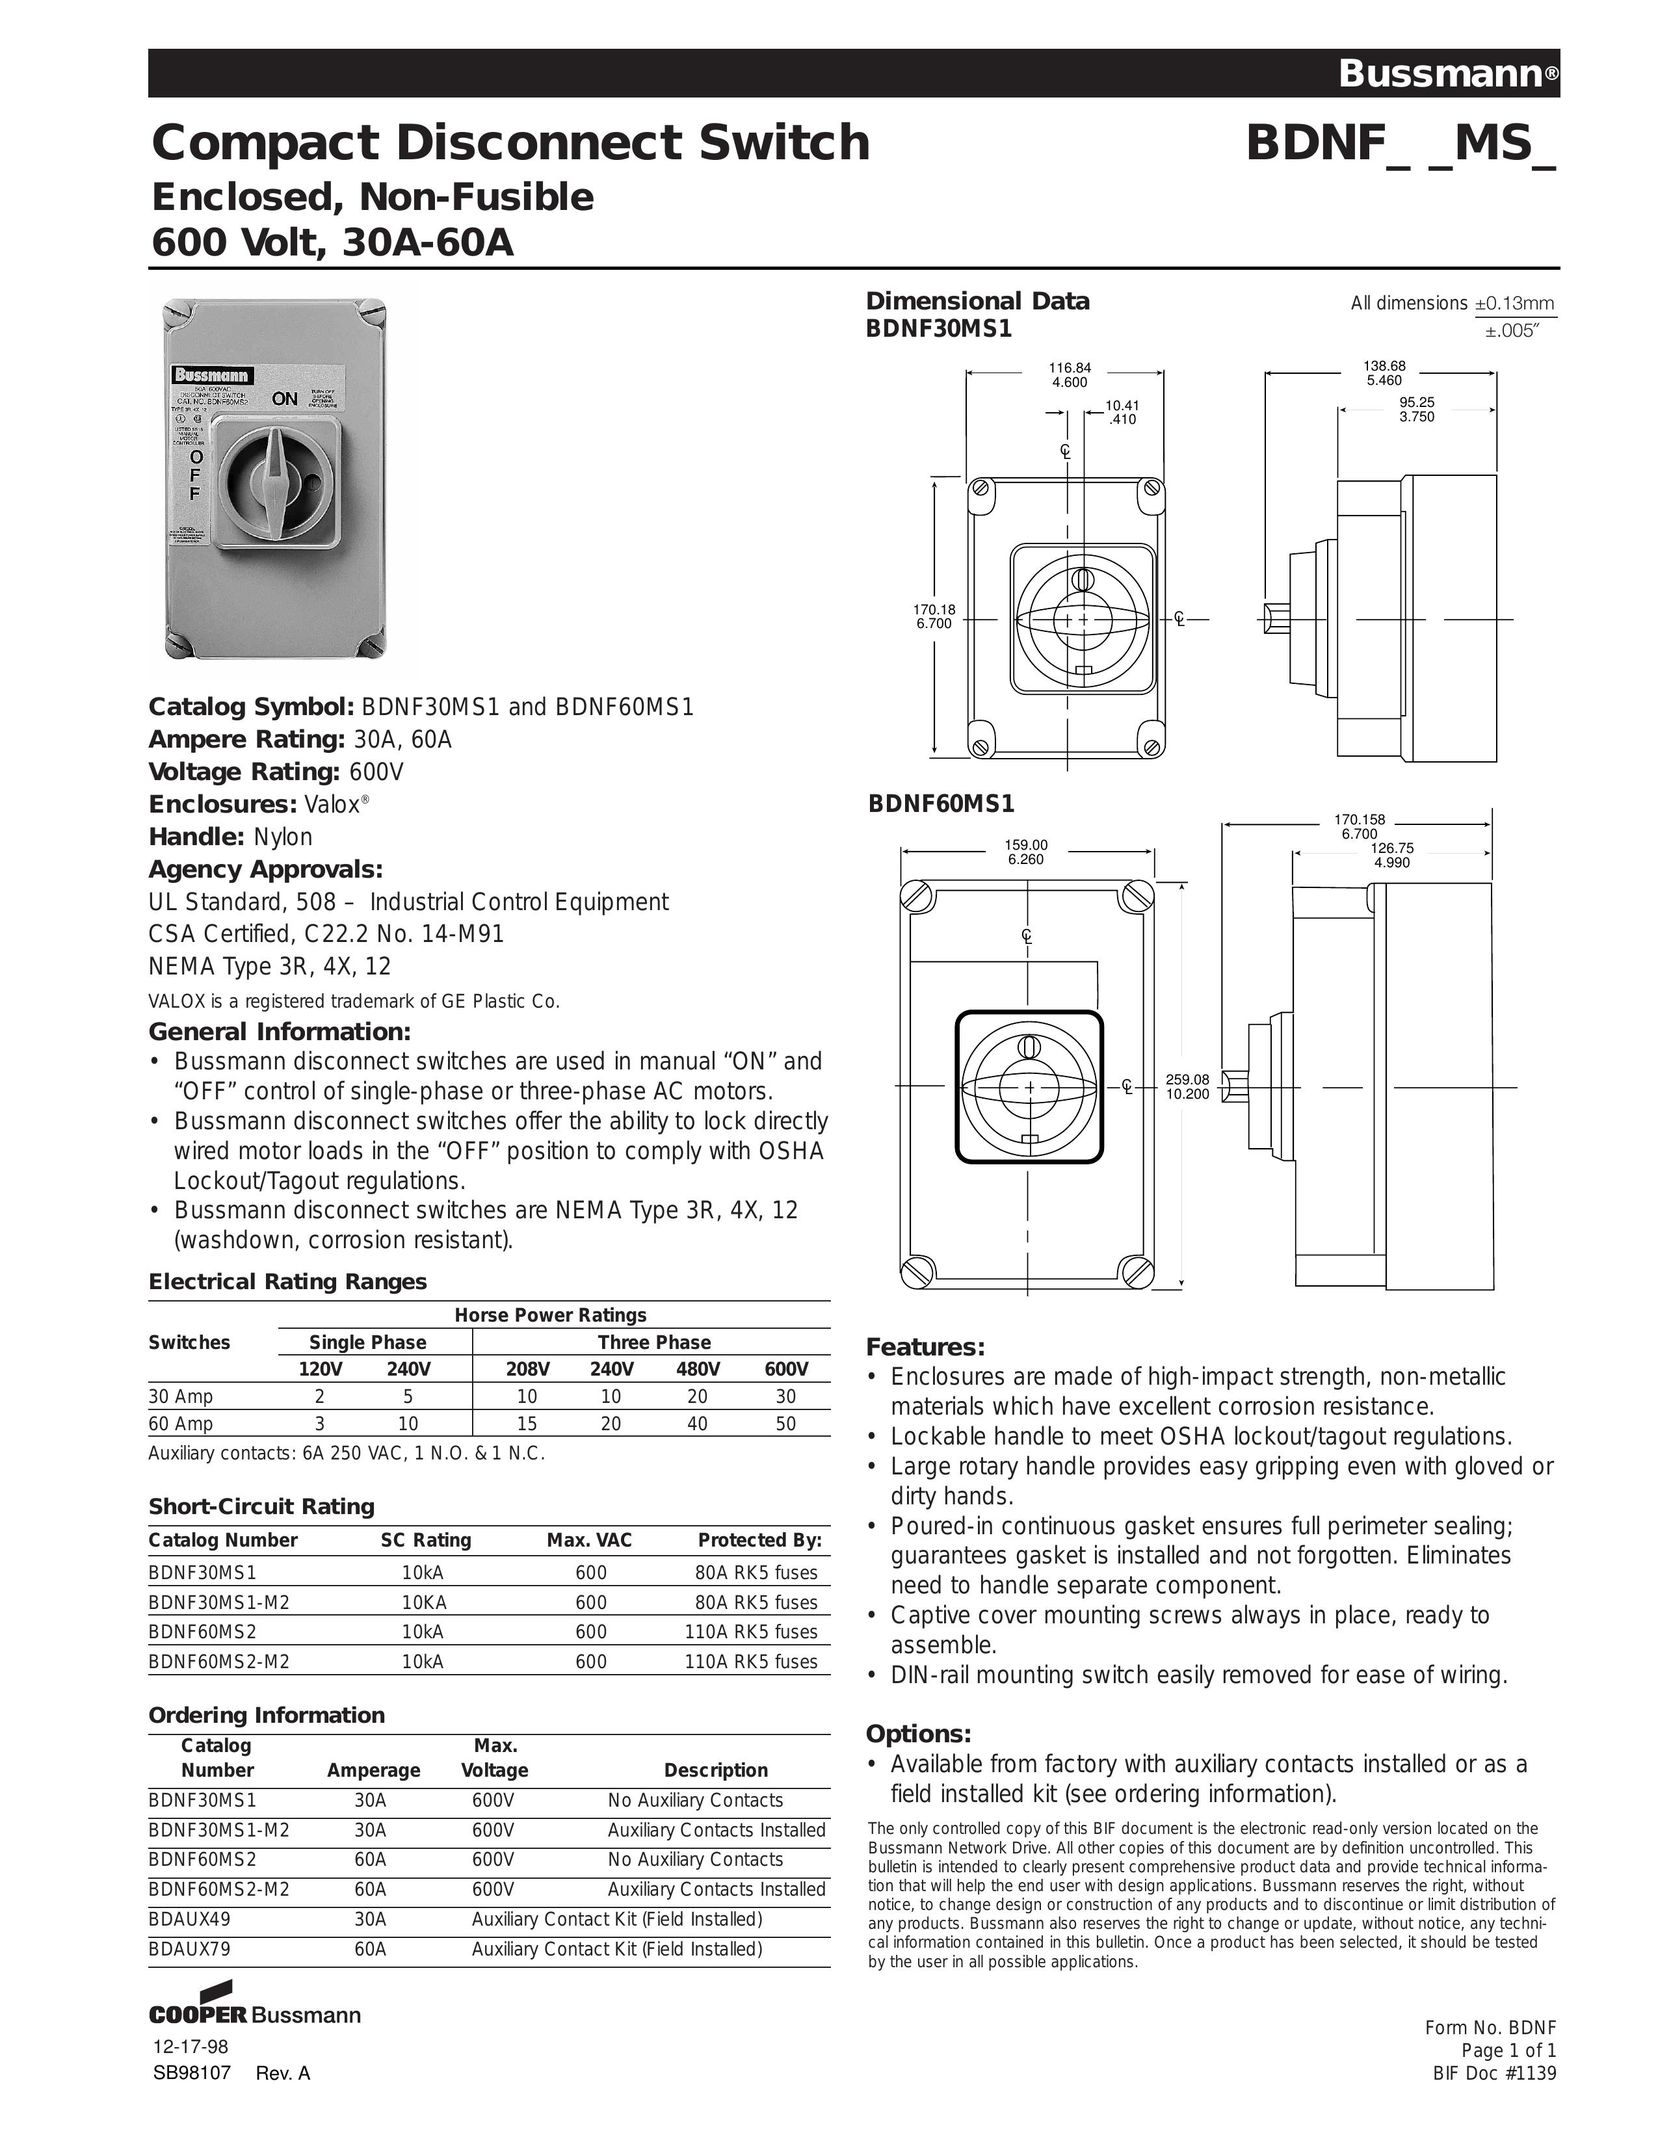 Cooper Bussmann 30A-60A Switch User Manual